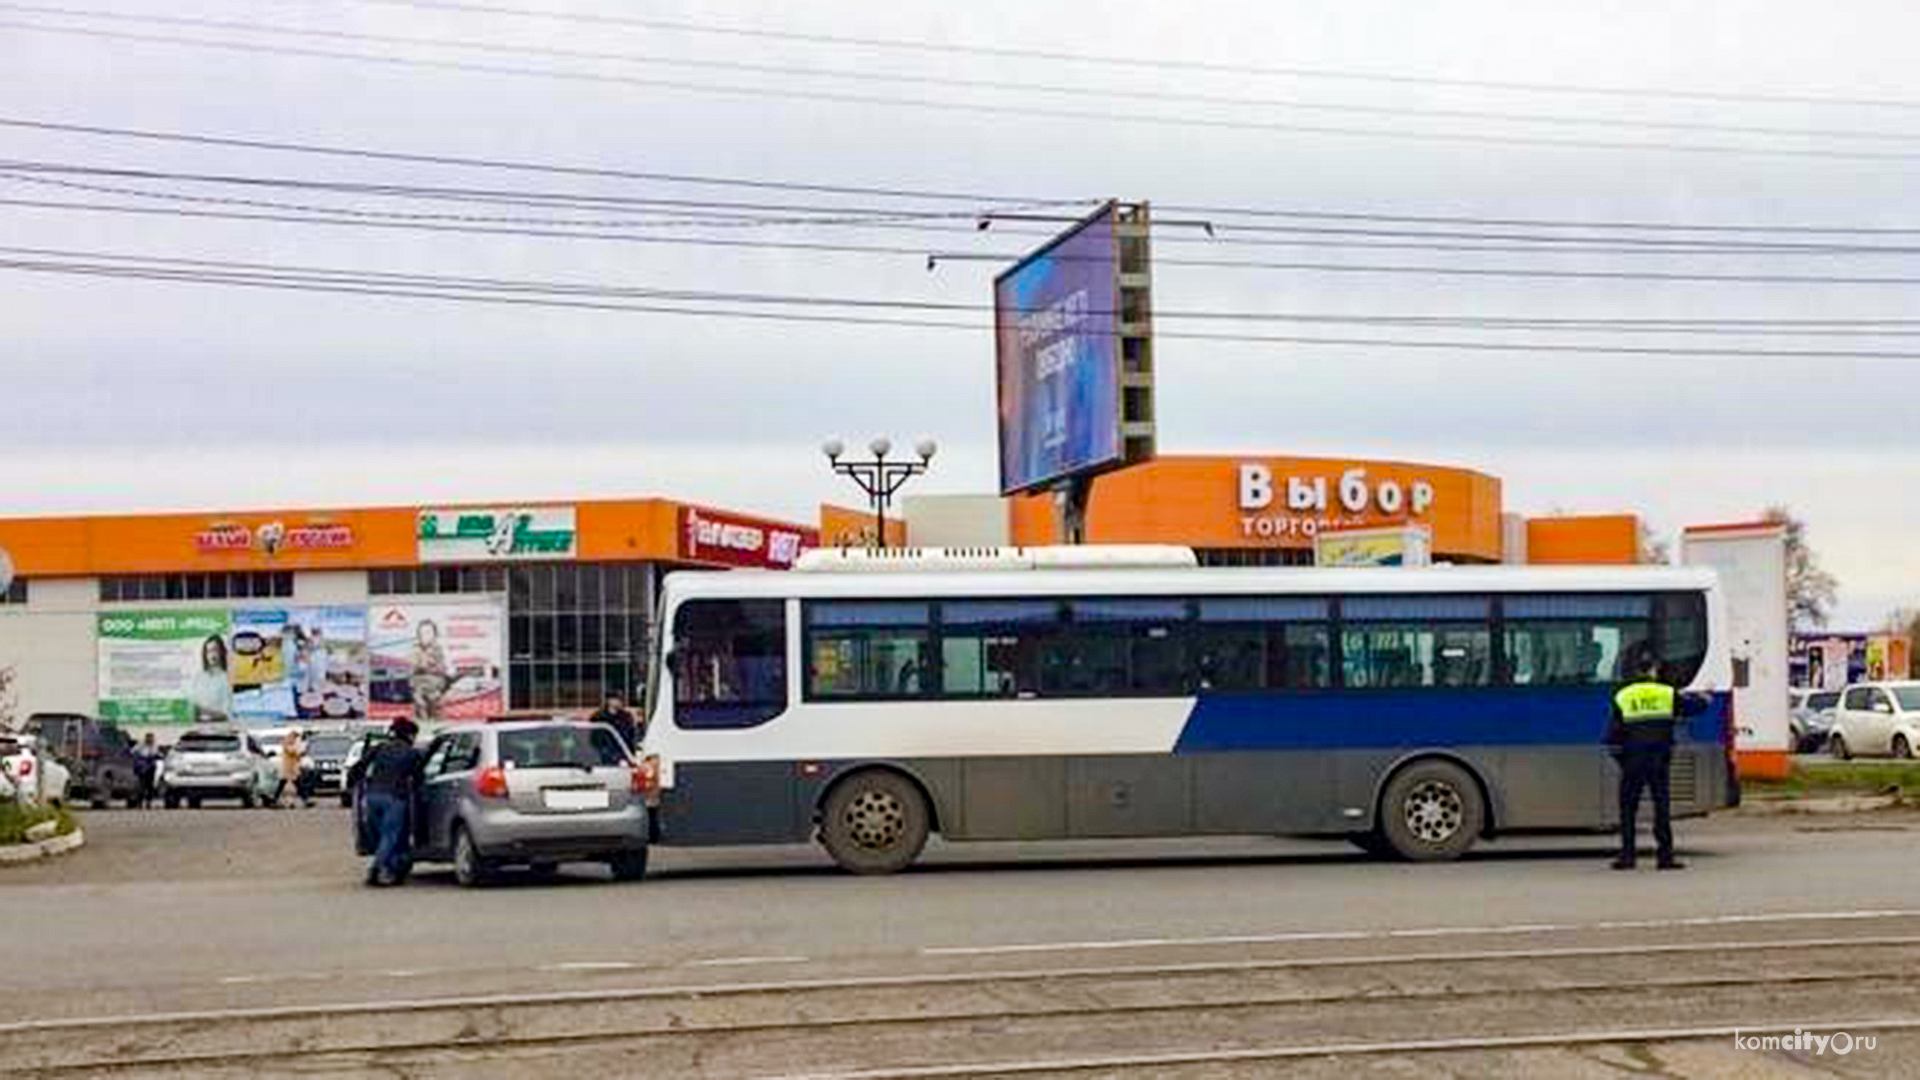 Телефон автовокзала комсомольска. Автовокзал Комсомольск на Амуре. Автобусы Комсомольска-на-Амуре. Автобус 25 Комсомольск на Амуре. Автовокзал Комсомольское.